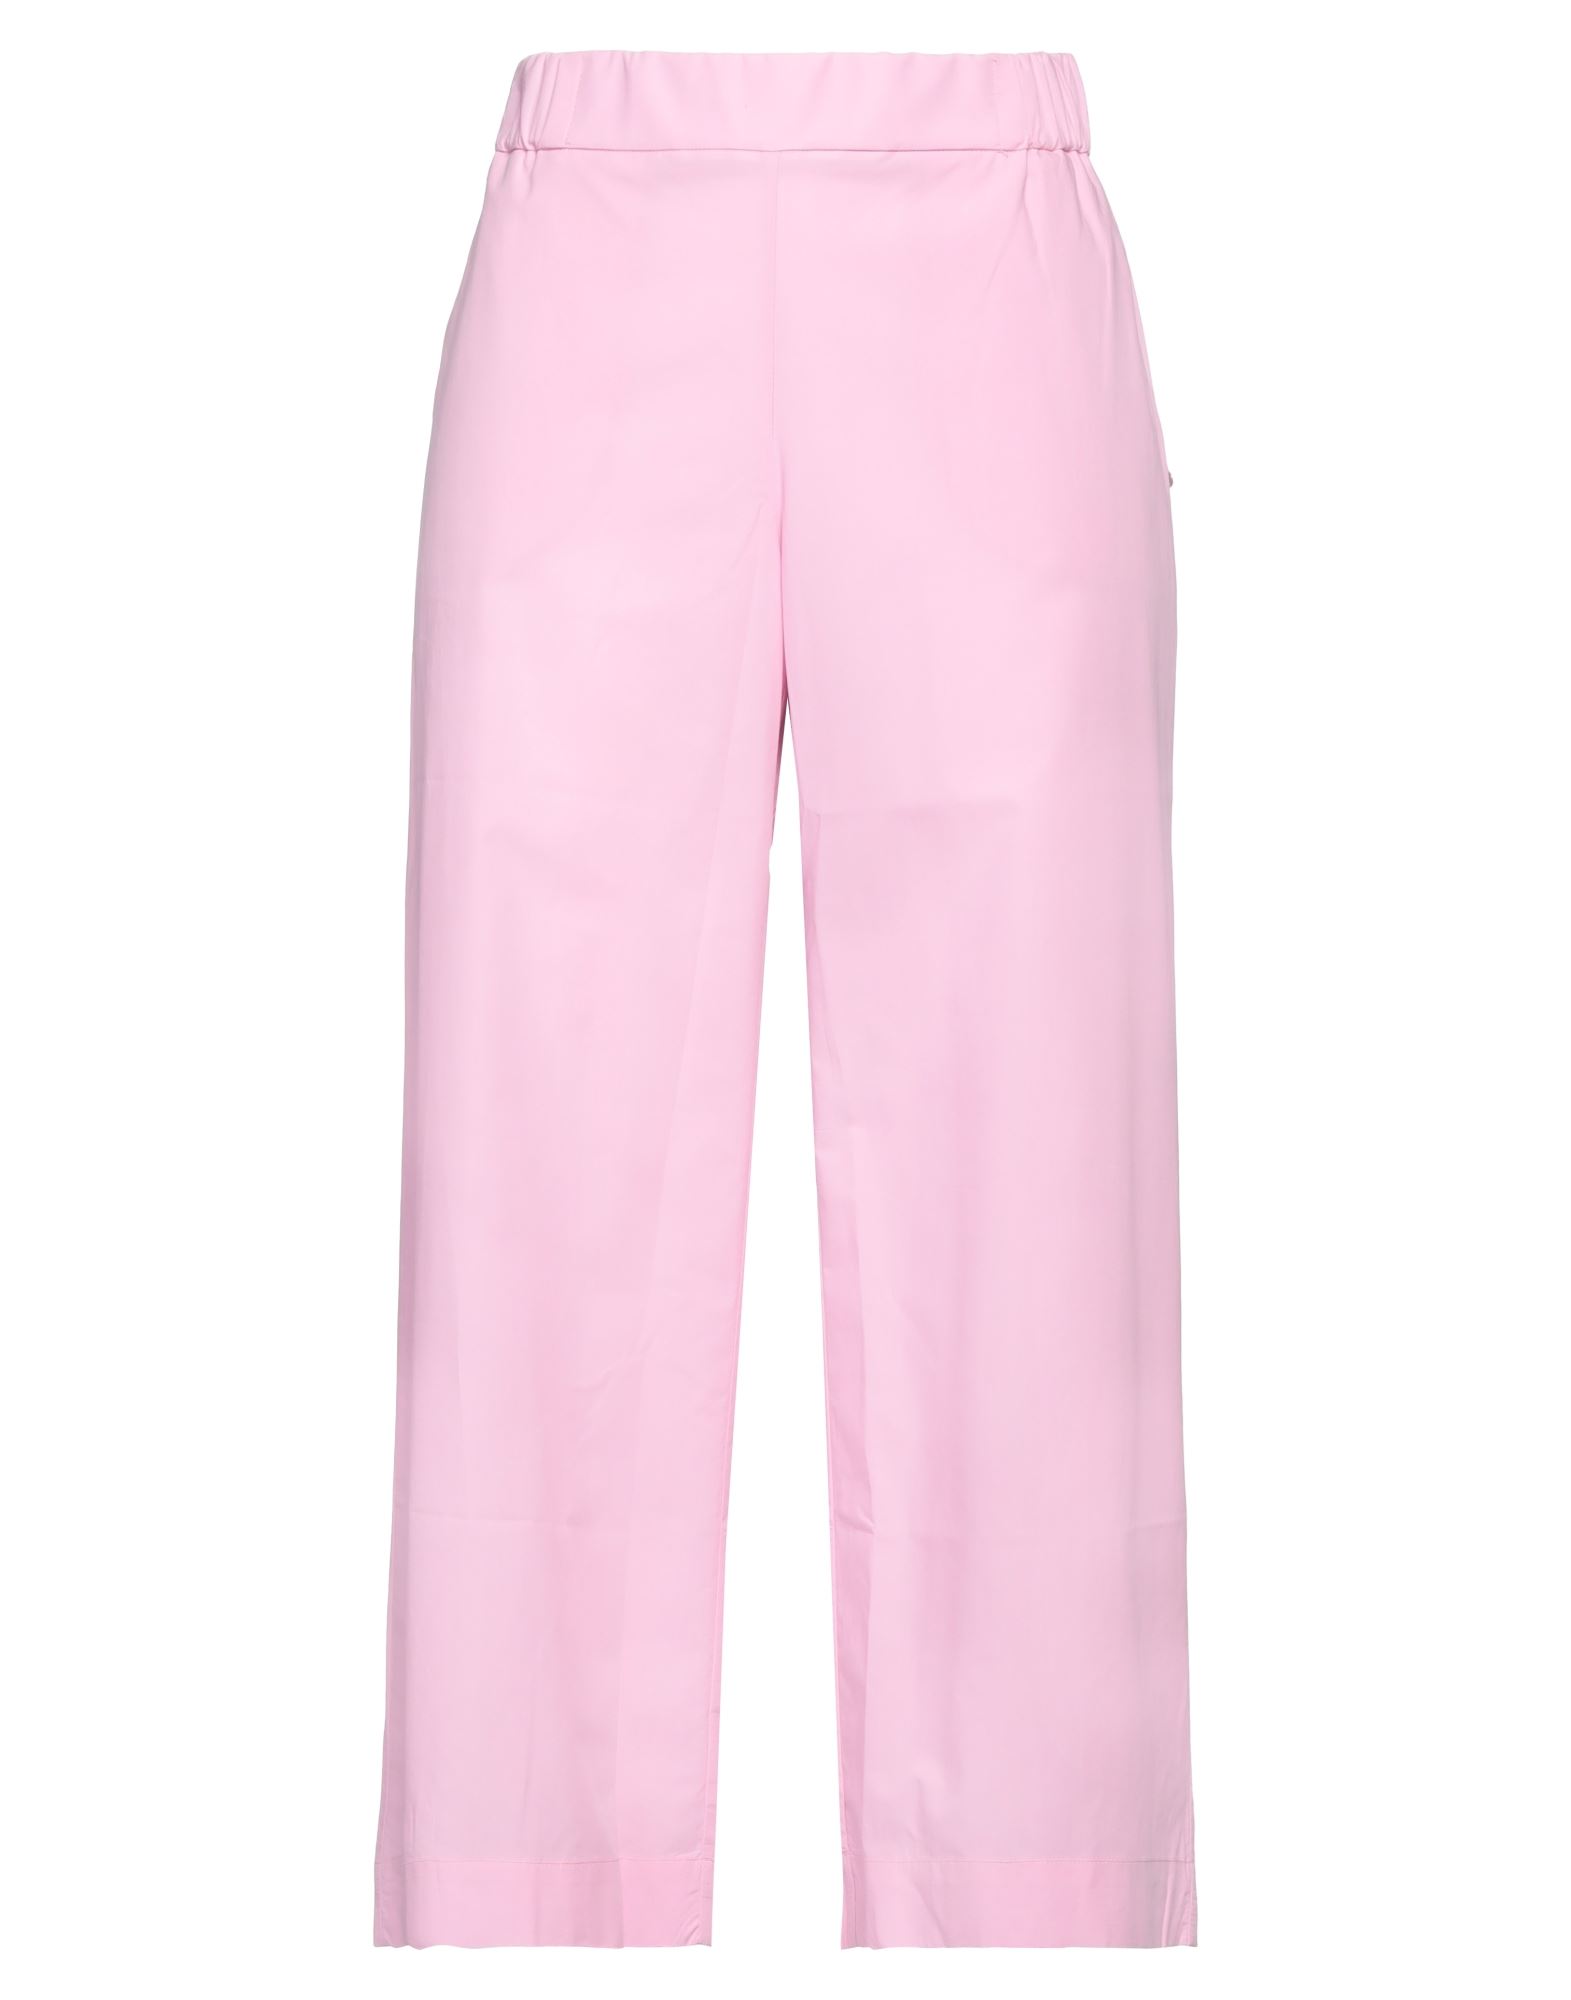 Ottod'ame Woman Pants Pink Size 6 Cotton